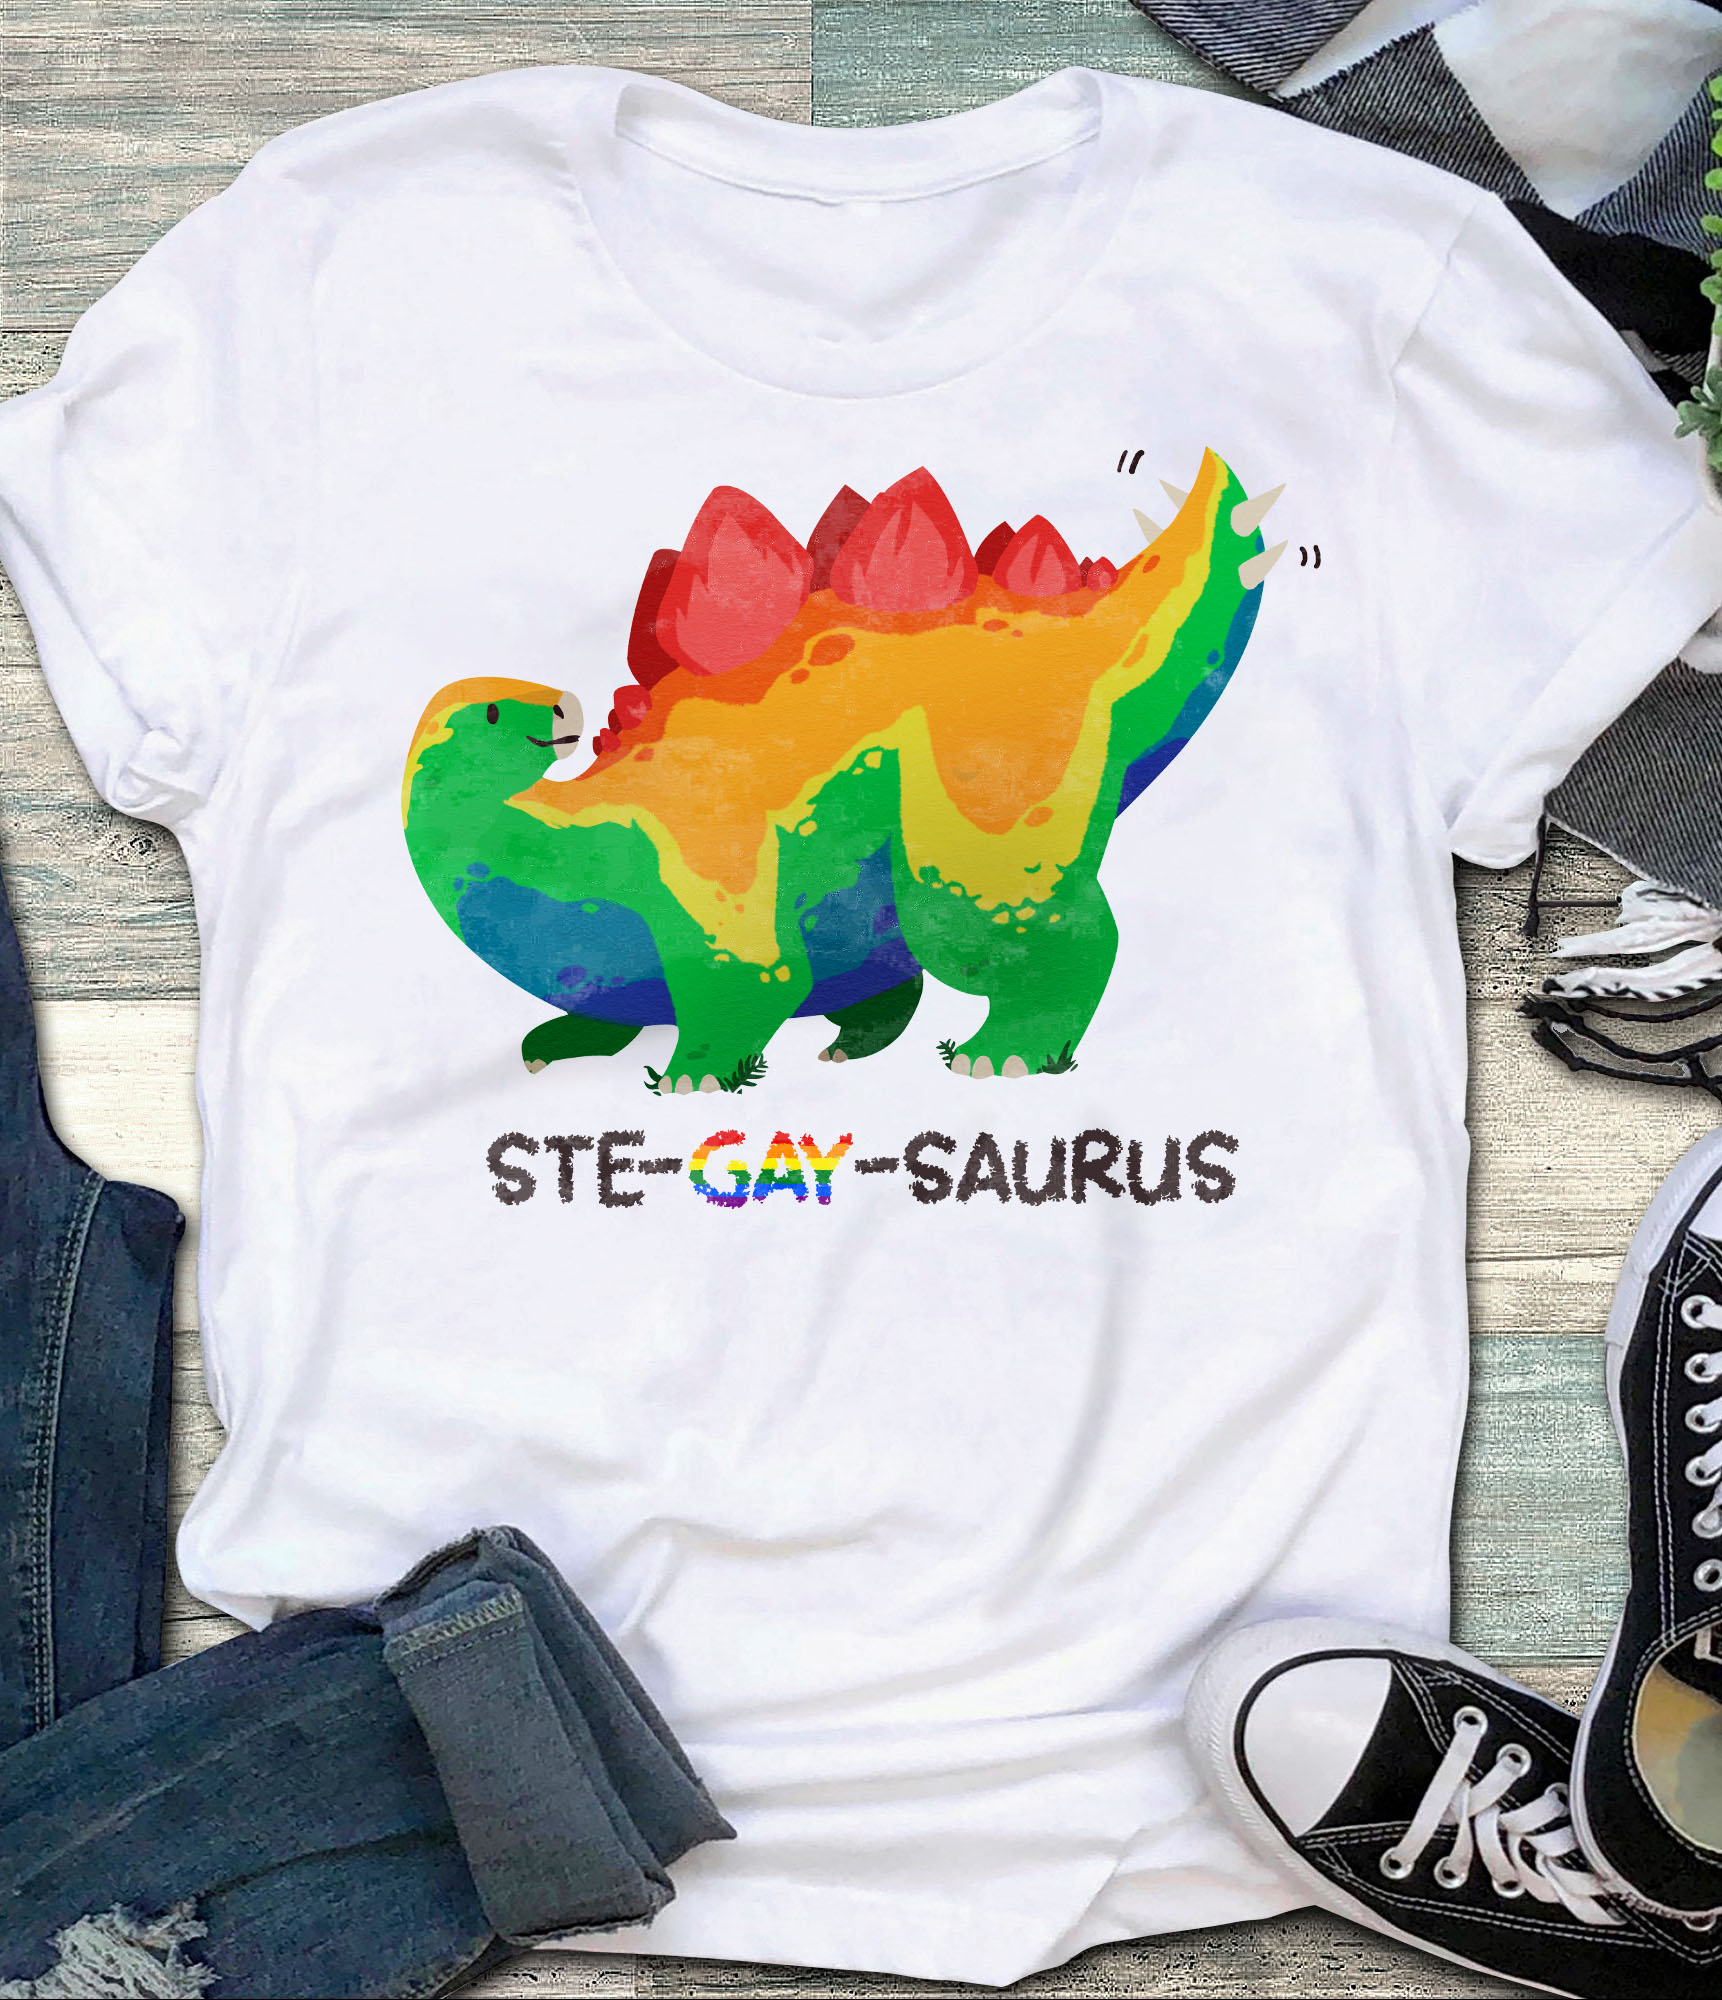 Ste-gay-saurus - Lgbt community, dinosaur lover